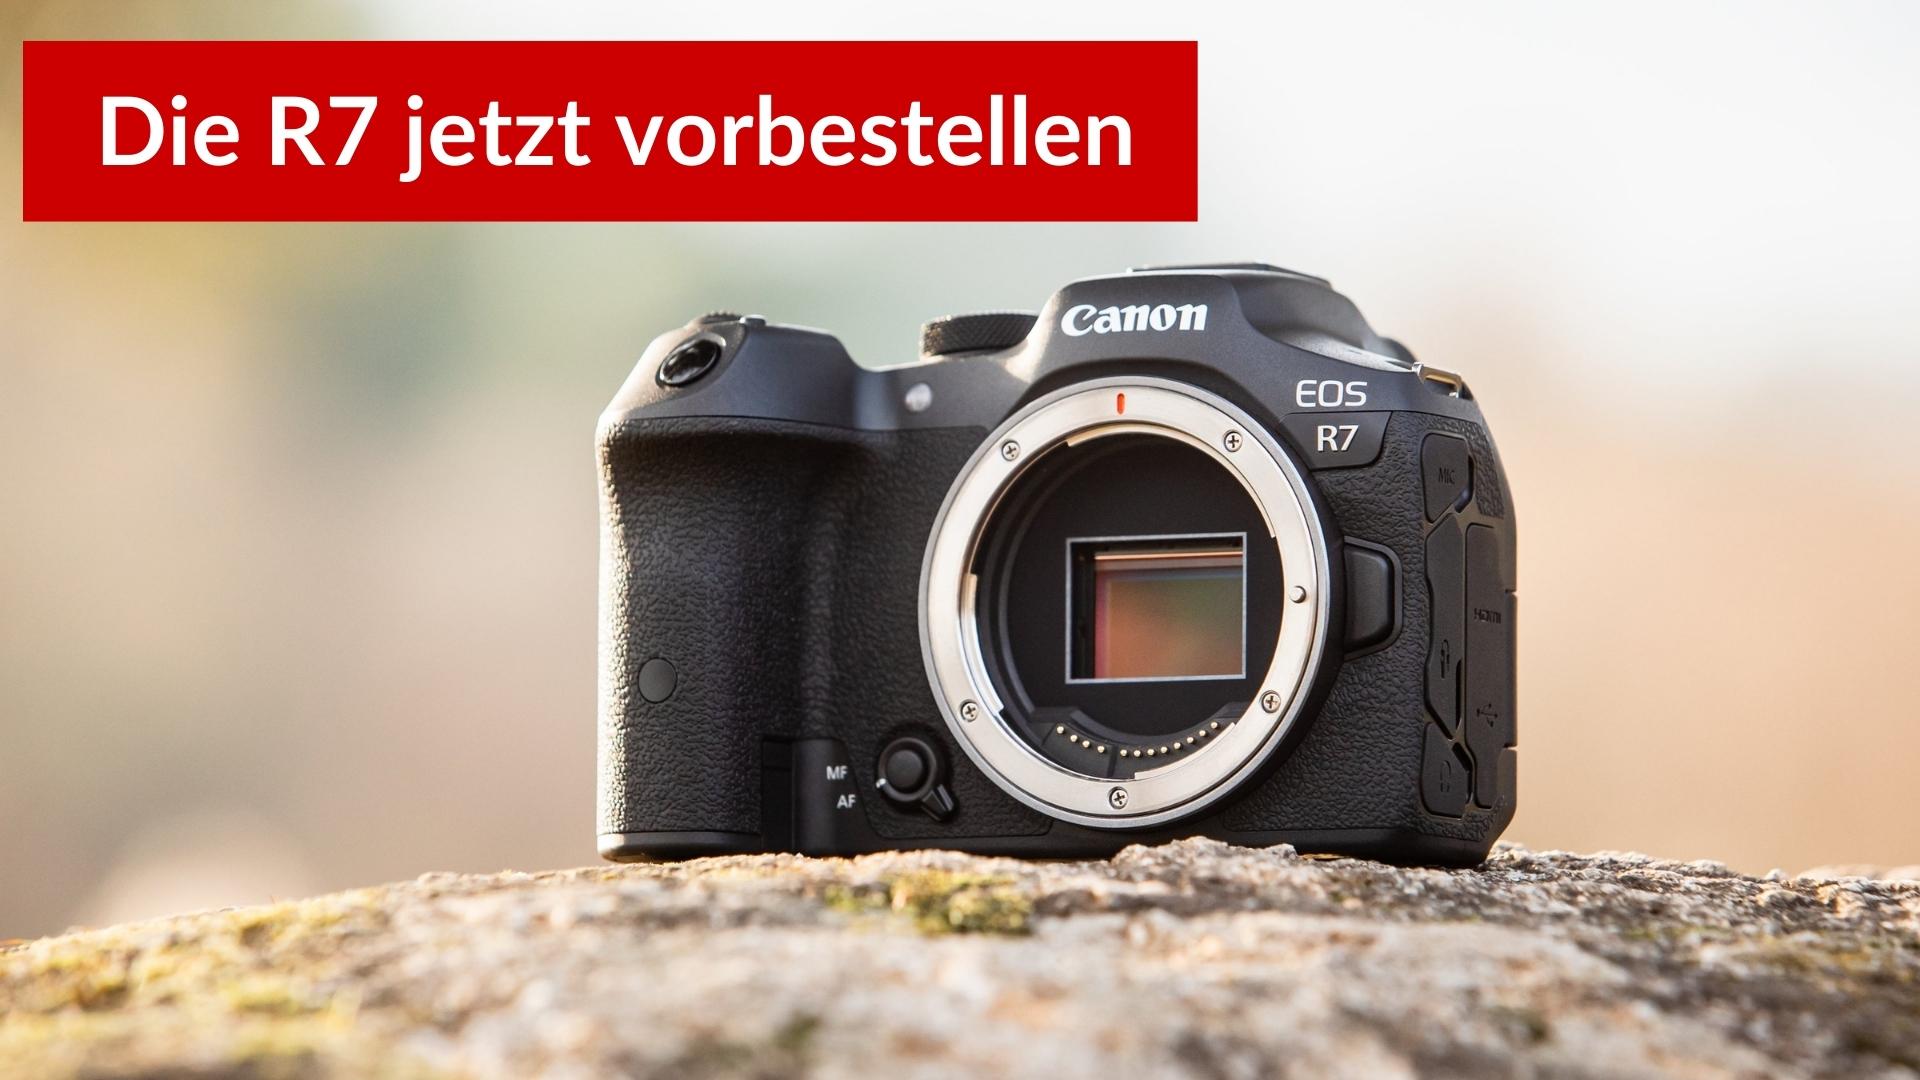 Die Canon EOS R7 bei Foto Erhardt vorbestellen*